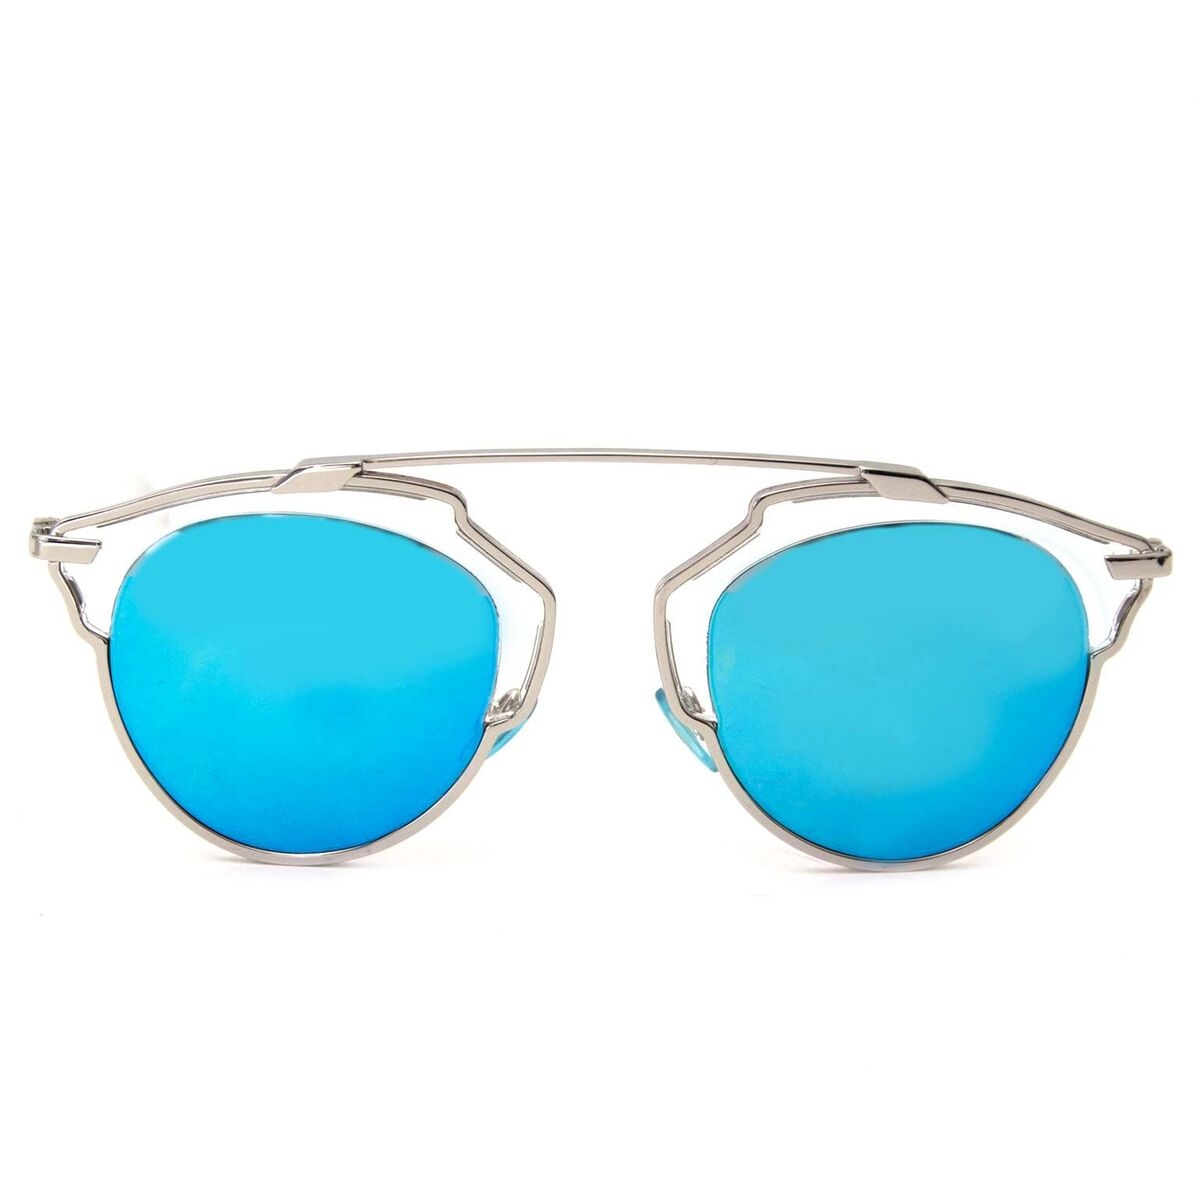 SALE 645 Dior So Real Mirrored Sunglasses  eBay